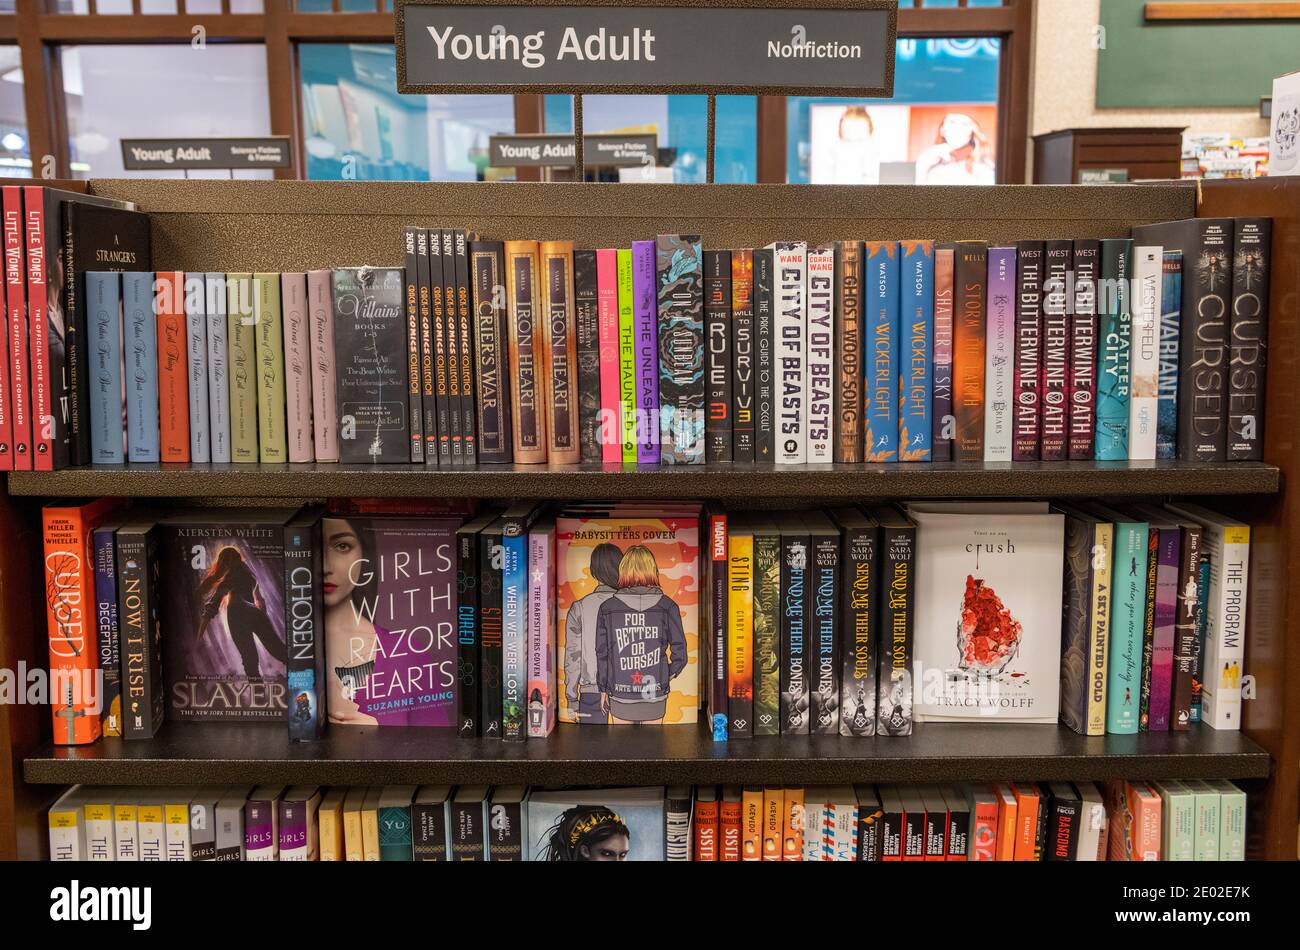 Libros para adultos jóvenes en estanterías, Barnes and Noble, EE.UU Foto de stock